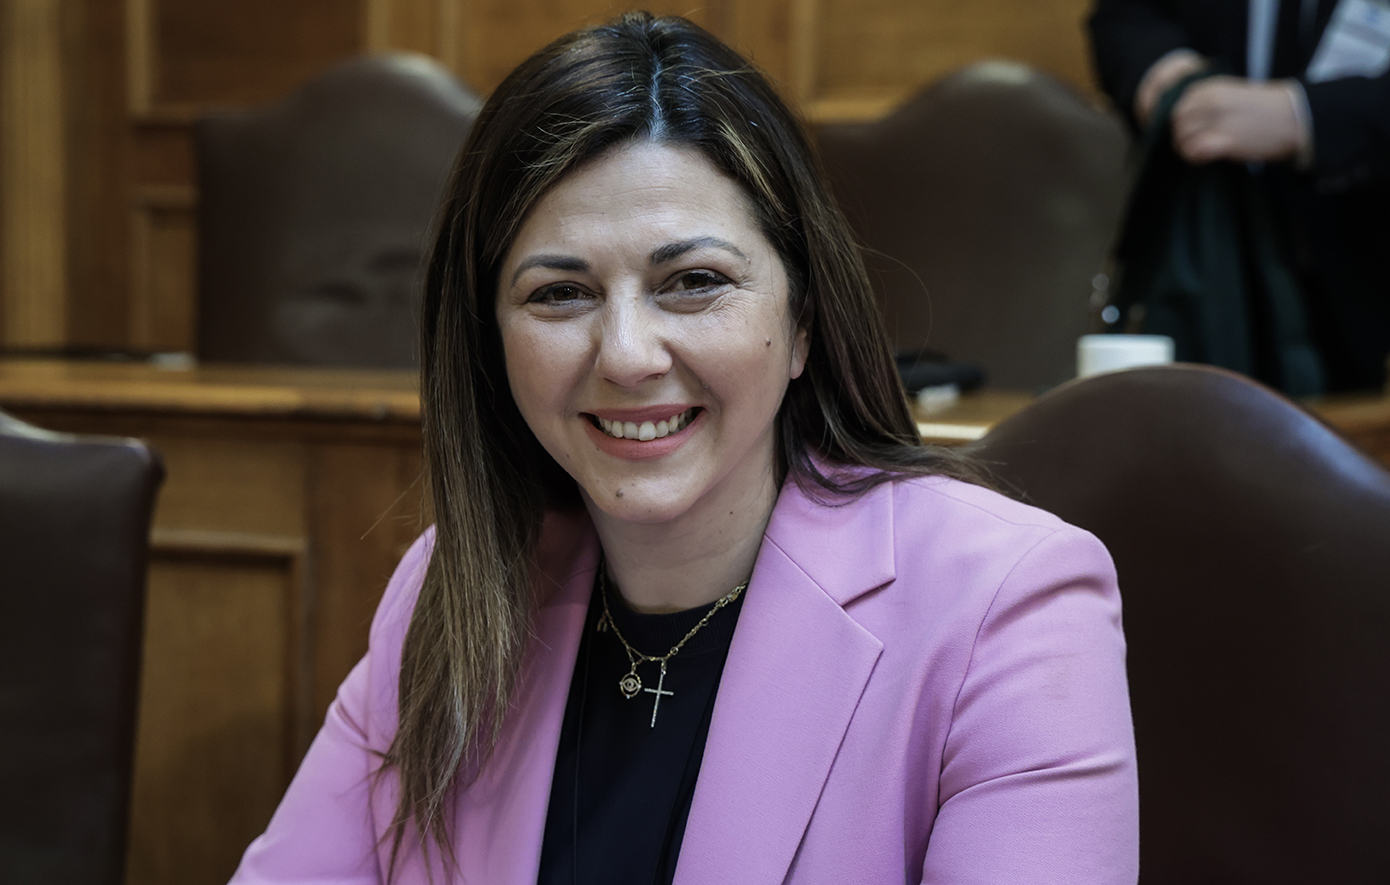 Σοφία Ζαχαράκη: Κανείς δεν μπορεί, να καλλιεργεί ρητορική μίσους και να καταφέρεται κατά βουλευτών για την ψήφο τους